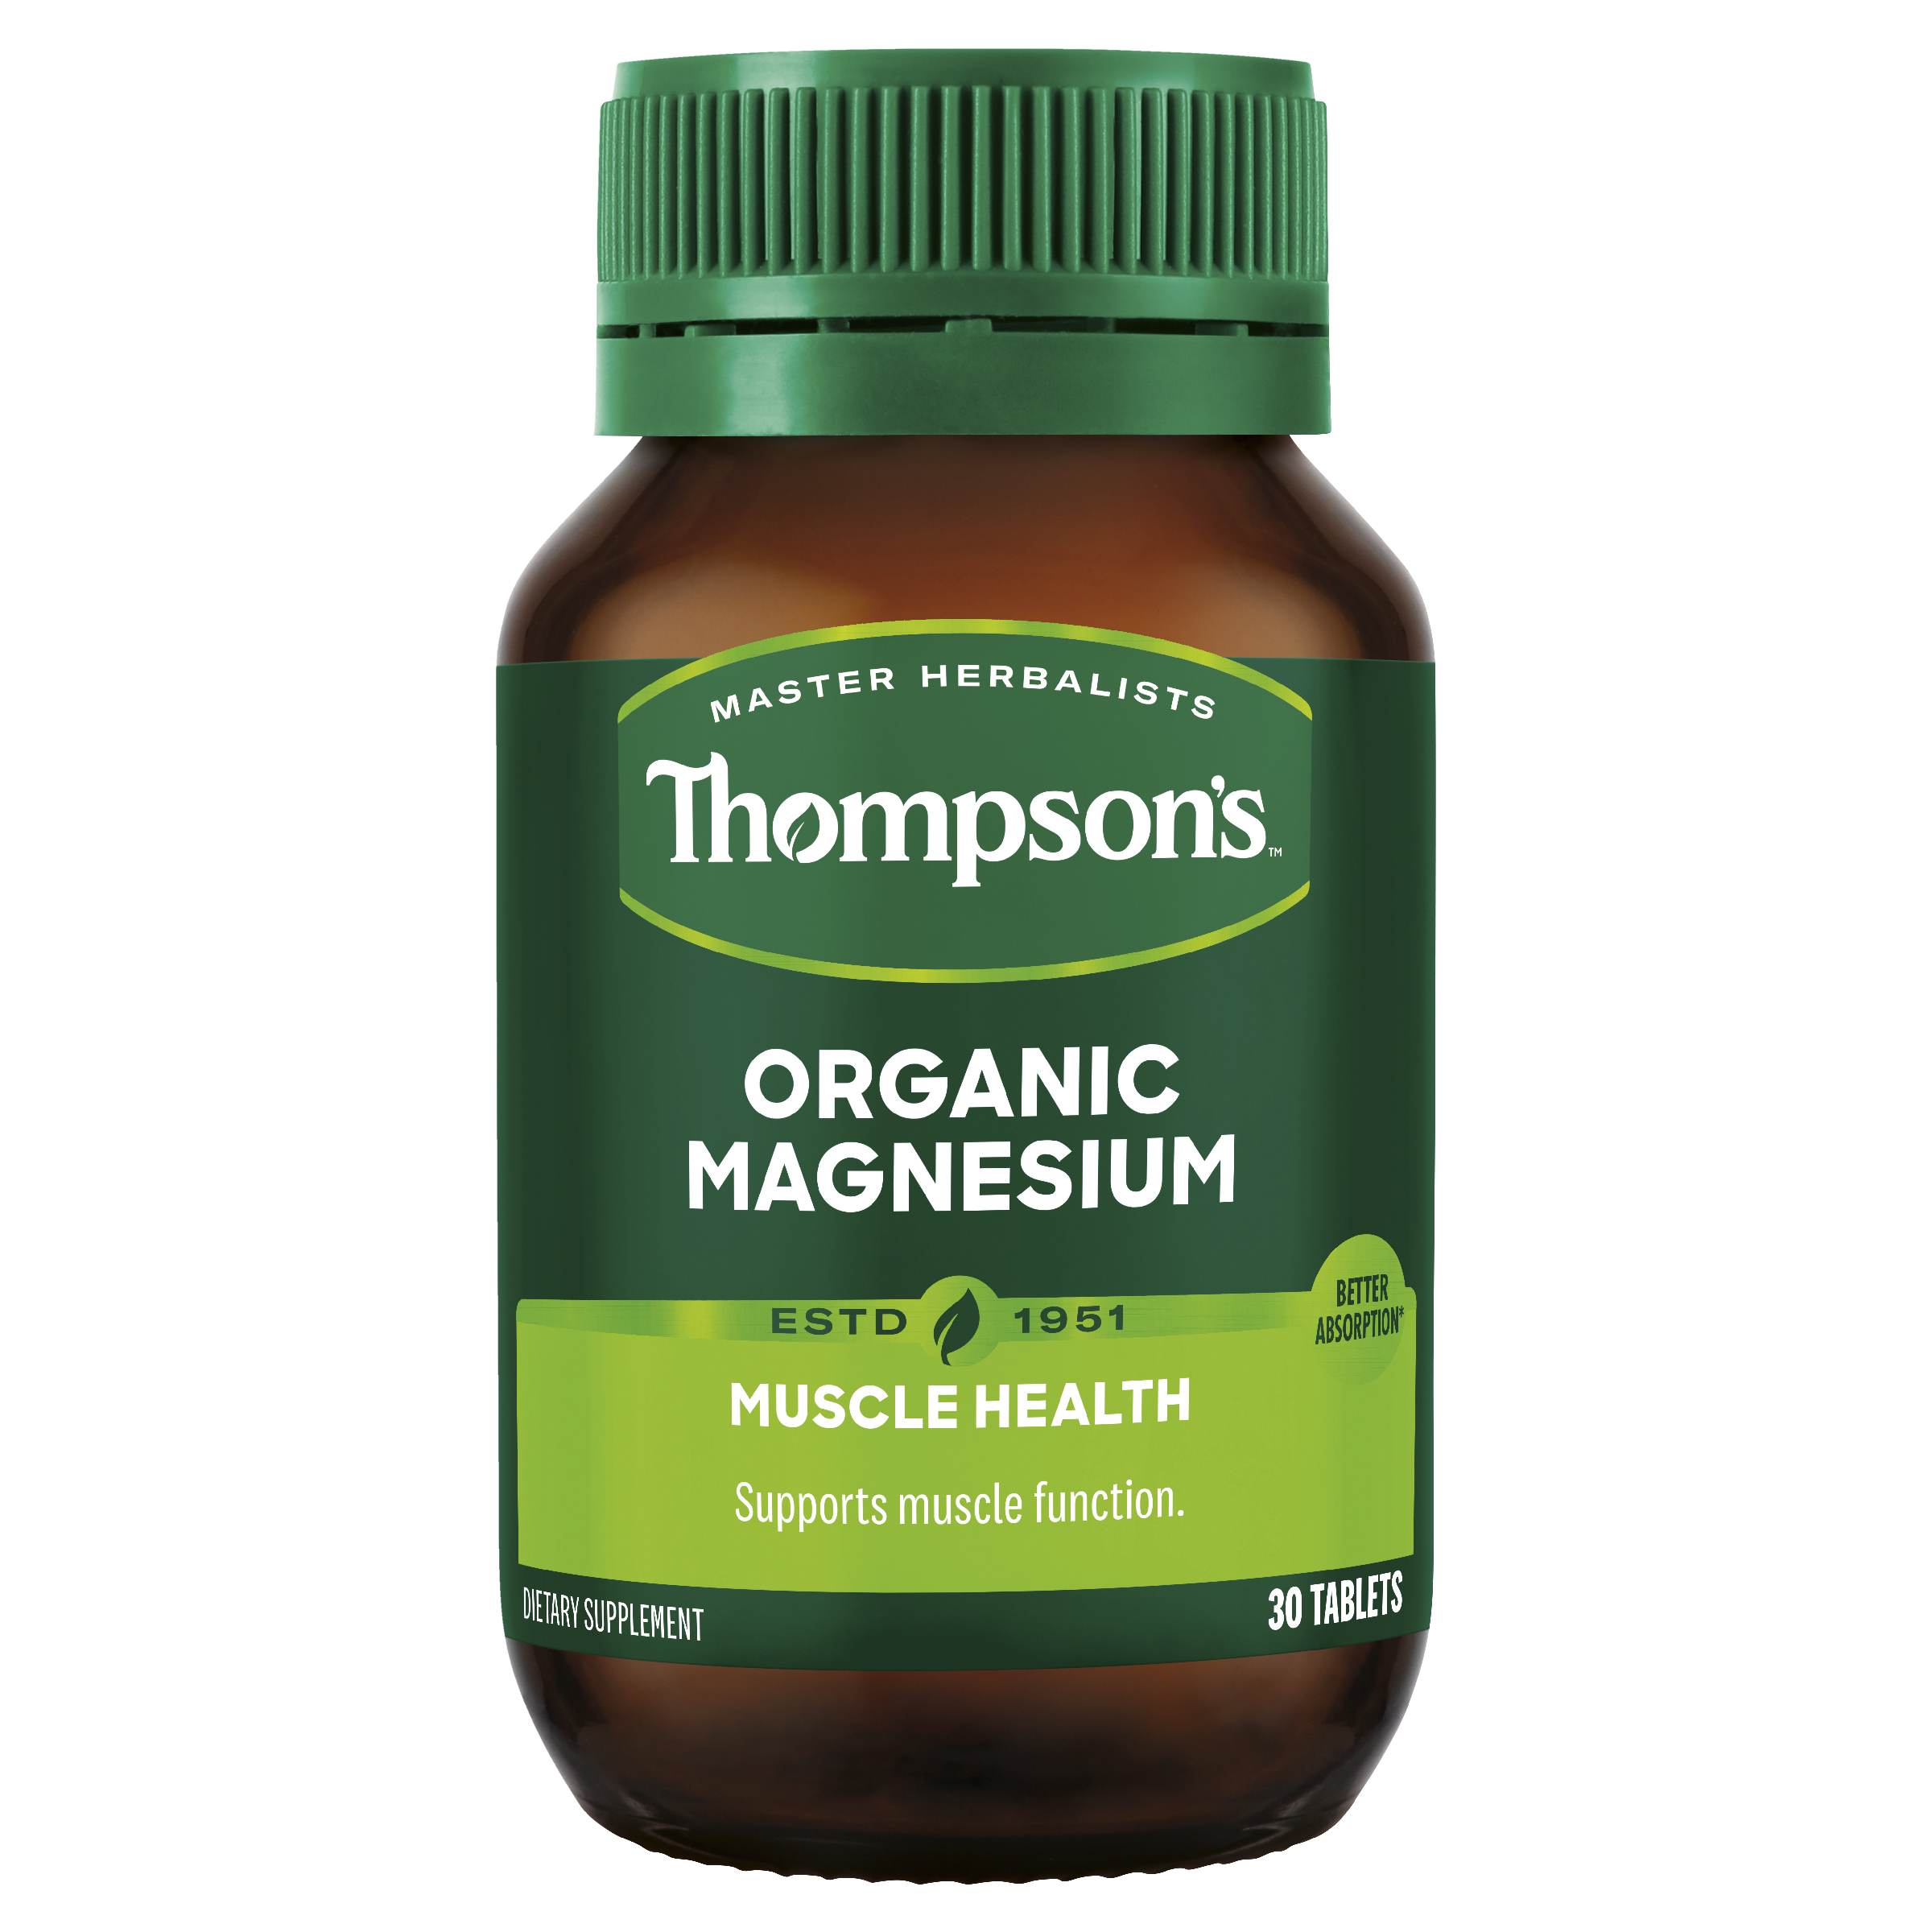 Thompsons Magnesium Organic 30 Tablets